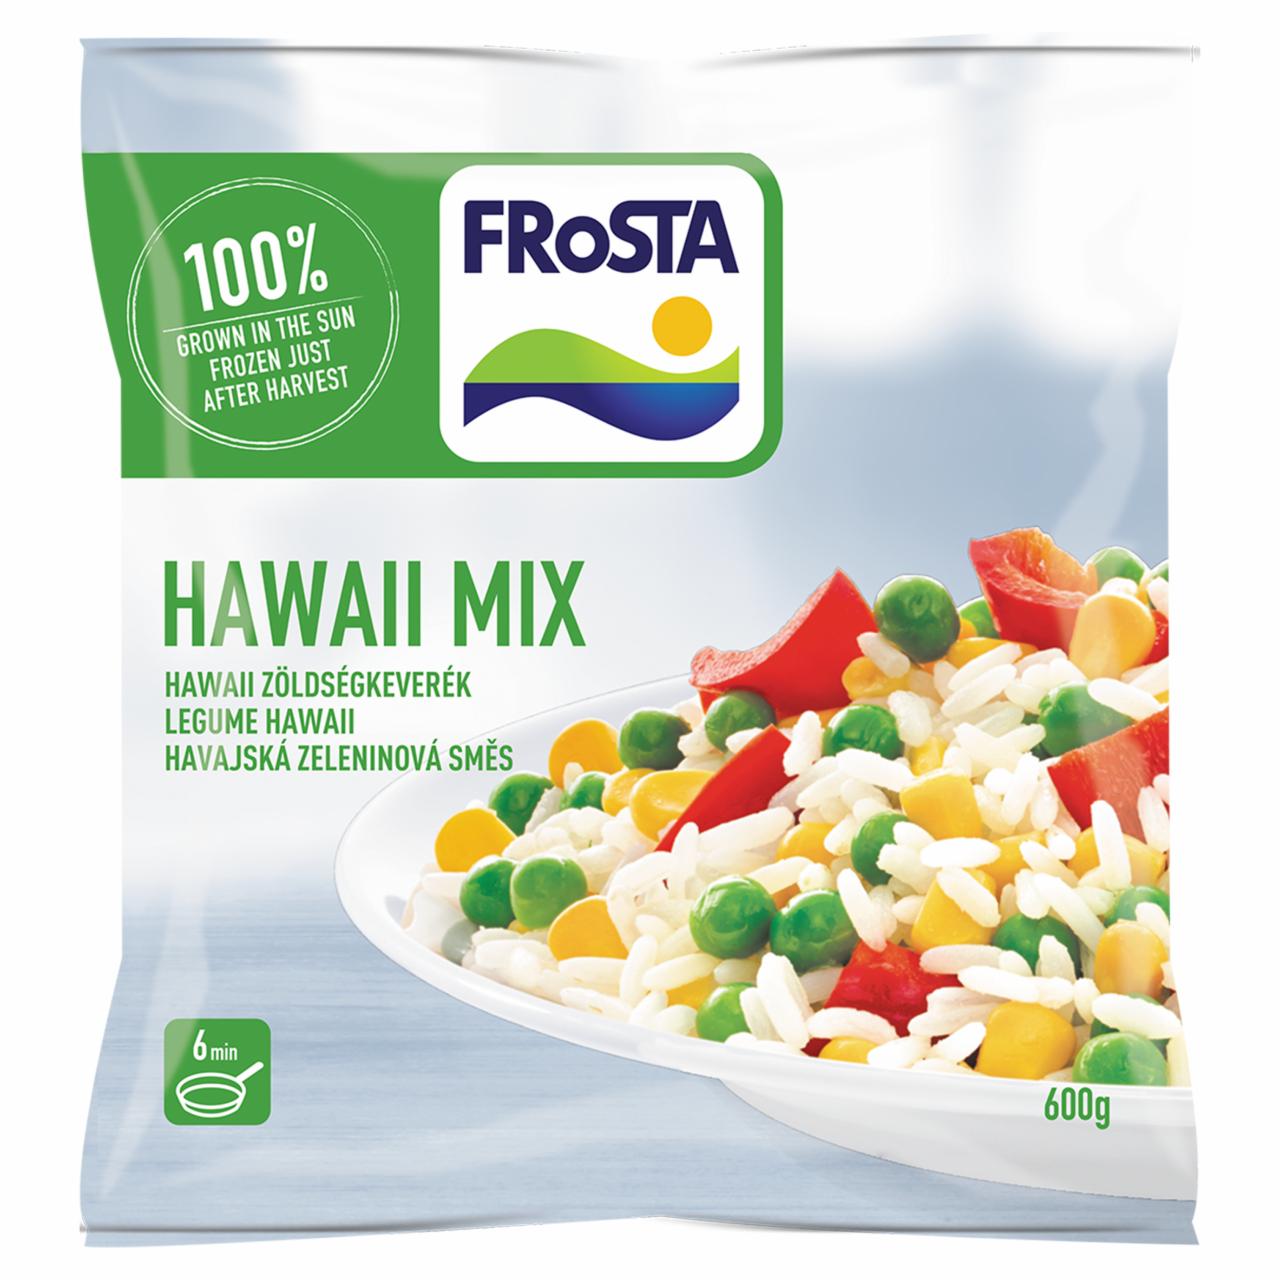 Képek - FRoSTA gyorsfagyasztott hawaii zöldségkeverék 600 g